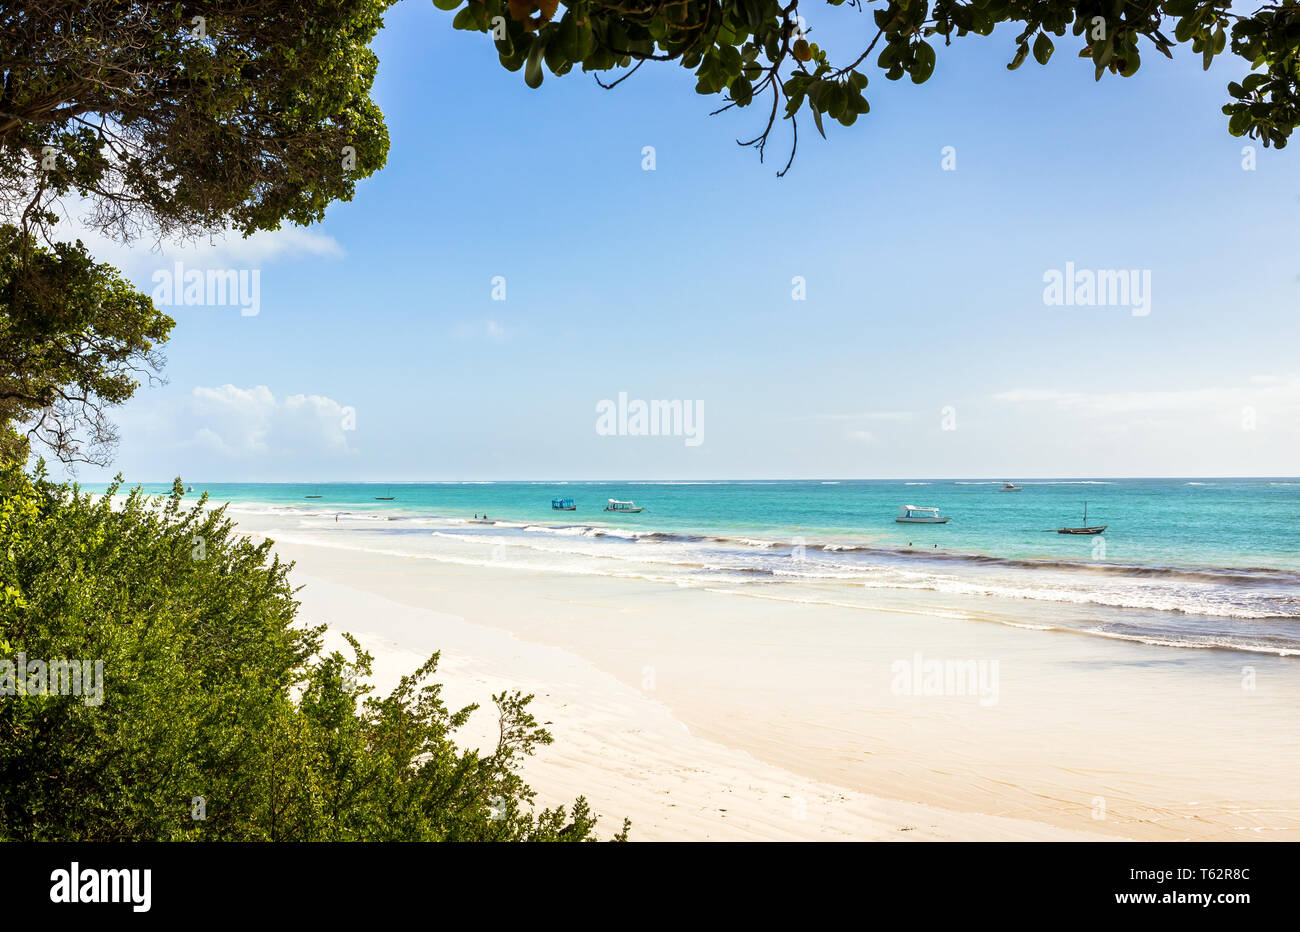 Diani Beach incroyable paysage marin avec du sable blanc et turquoise de l'Océan Indien, le Kenya Banque D'Images